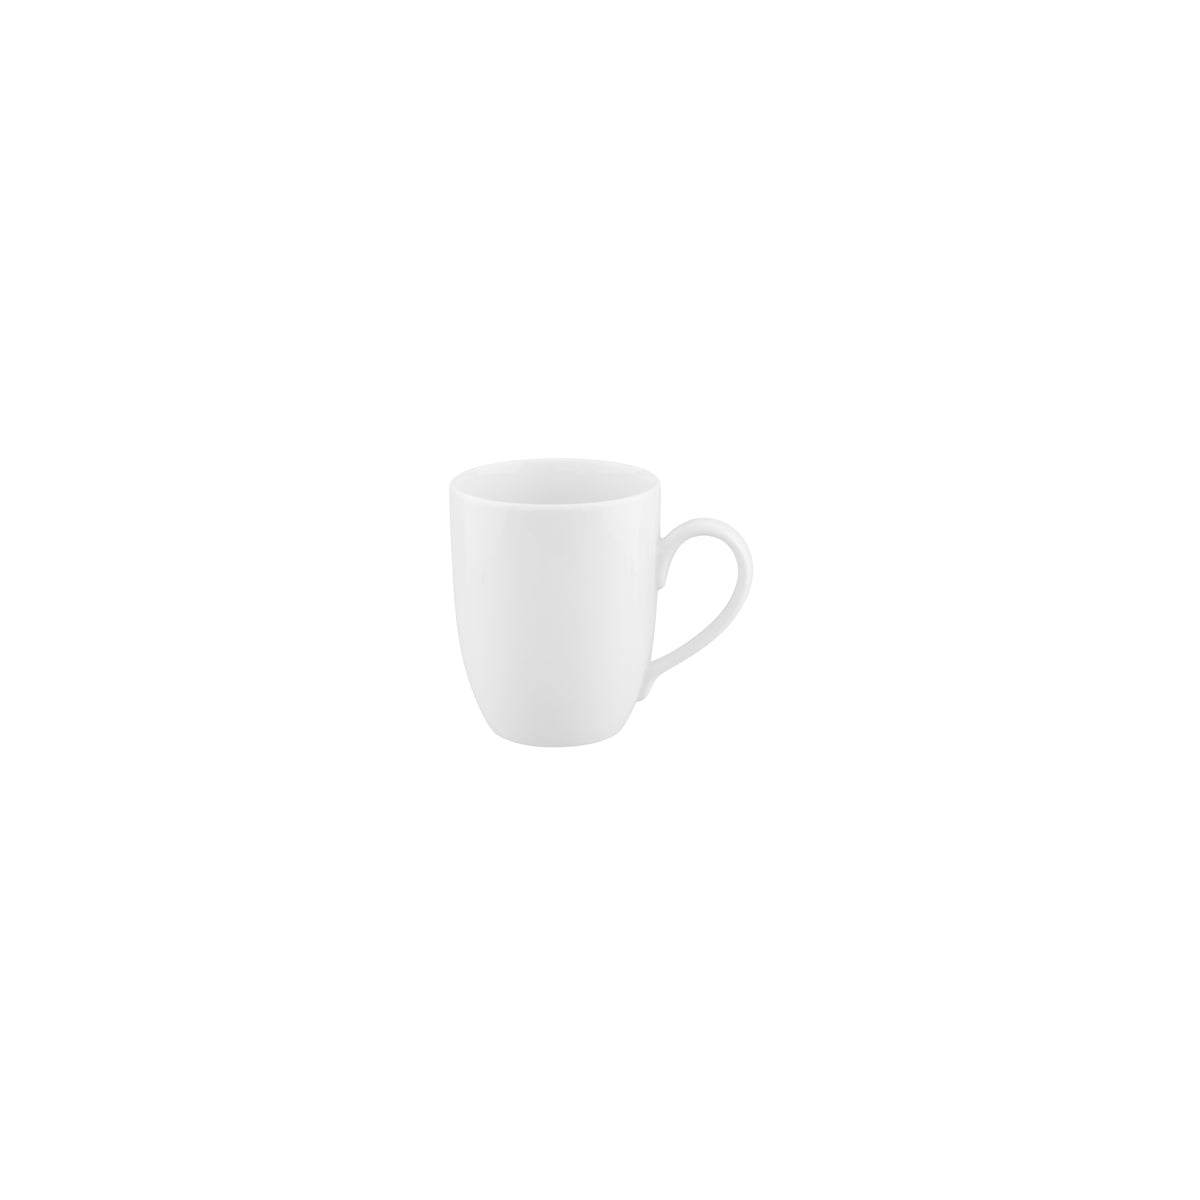 94343 Royal Porcelain Chelsea Coffee Mug 370ml Tomkin Australia Hospitality Supplies